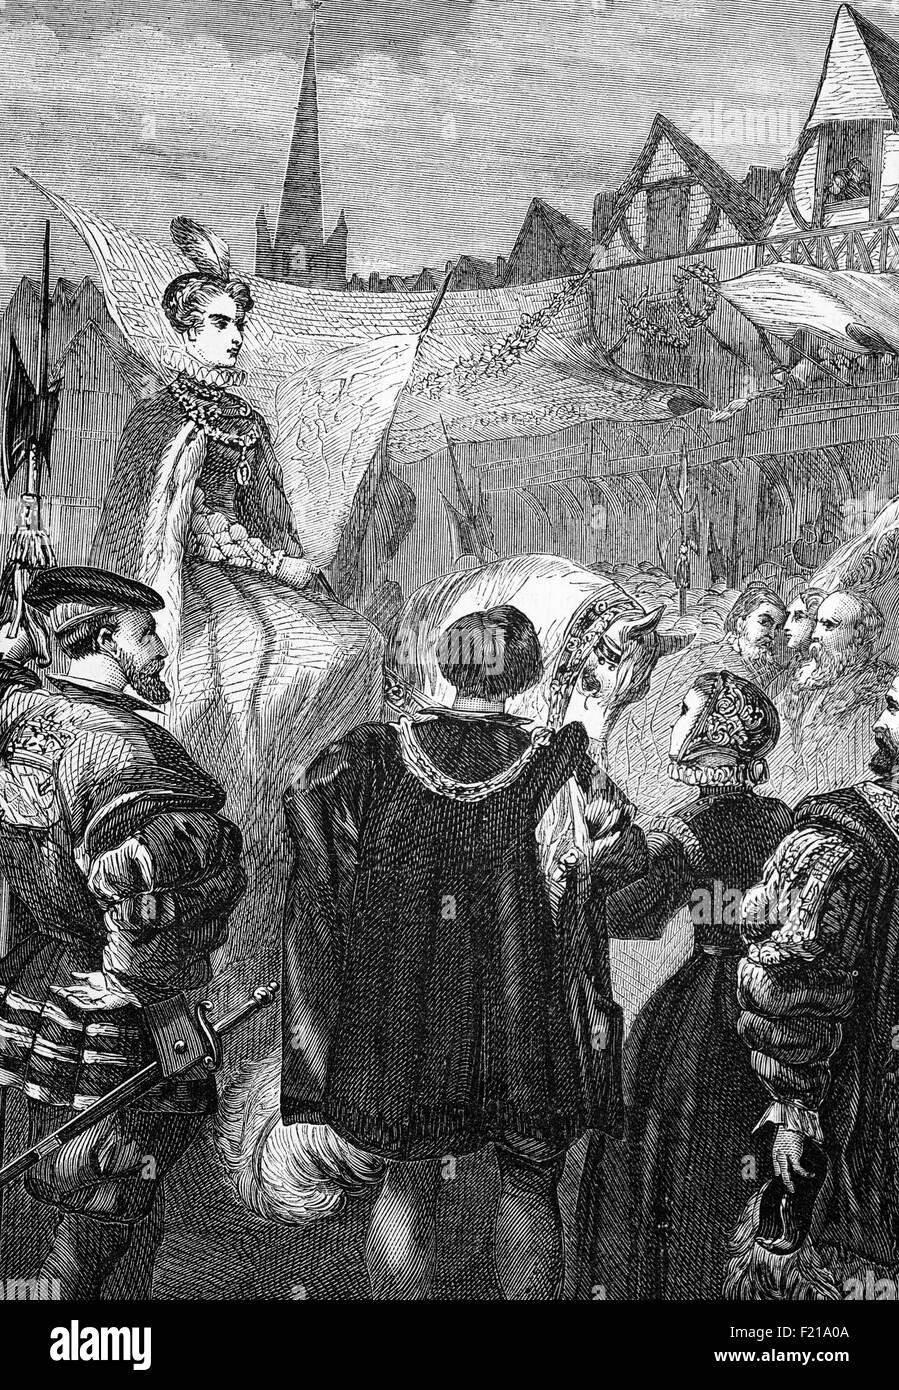 Der triumphale Fortschritt von Königin Elizabeth I (1533-1603) durch die Stadt London am Vorabend ihrer Krönungszeremonie. Sie wurde von den Bürgern von ganzem Herzen begrüßt und von Rednern und Festzügen begrüßt, die meisten mit einem starken protestantischen Geschmack. Elisabeths offene und gnädige Antworten liebten sie den Zuschauern, die "wunderbar hinreißend" waren. Am folgenden Tag, dem 15. Januar 1559, wurde Elisabeth am 15. Januar 1559 von Owen Oglethorpe, dem katholischen Bischof von Carlisle, in Westminster Abbey gekrönt und gesalbt. Stockfoto